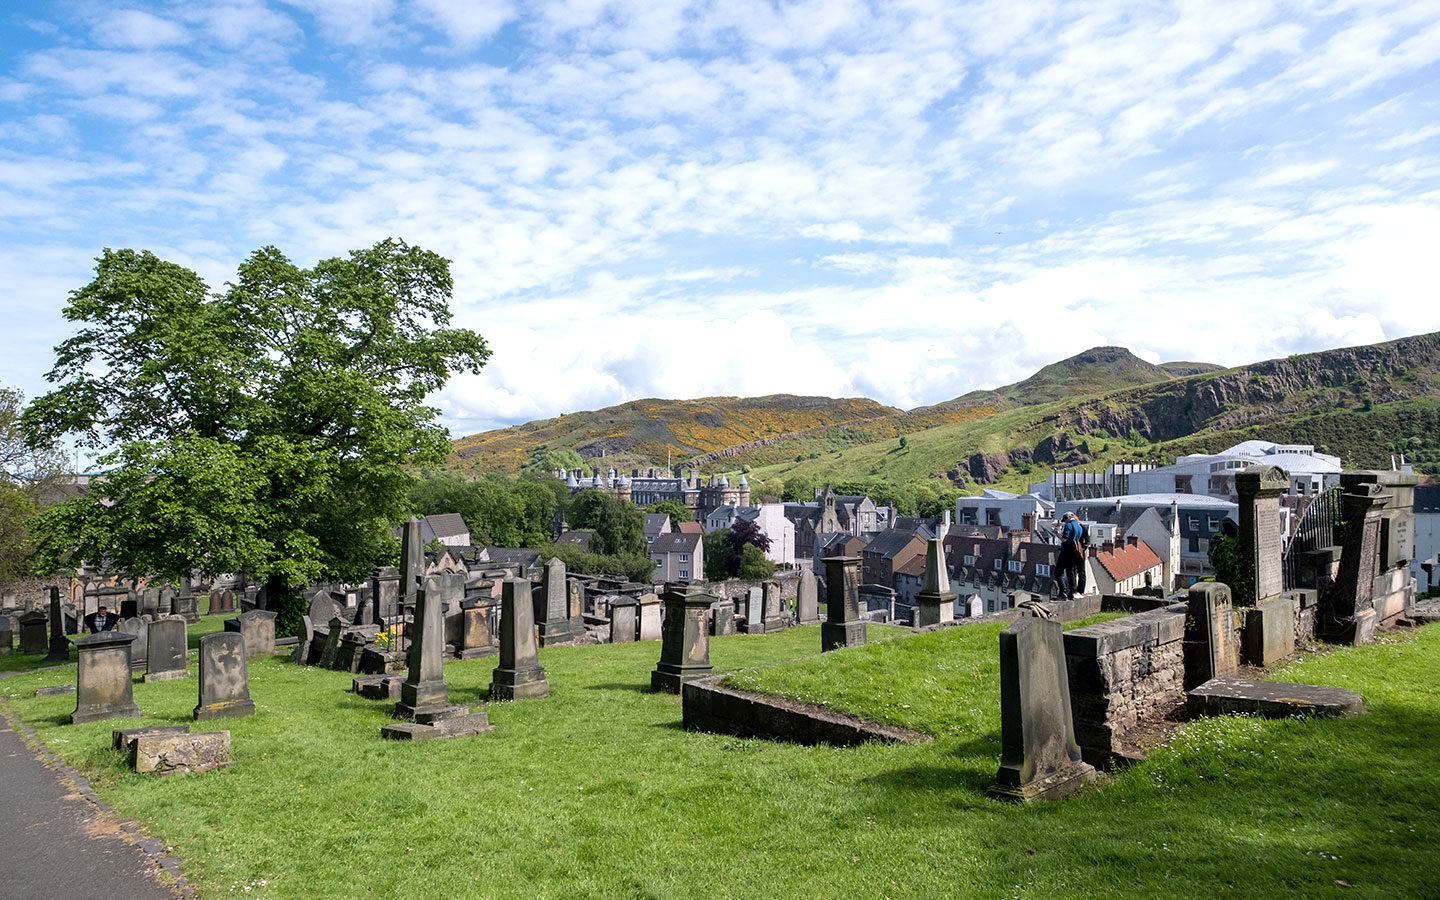 Views across Edinburgh from the New Calton Burial Ground